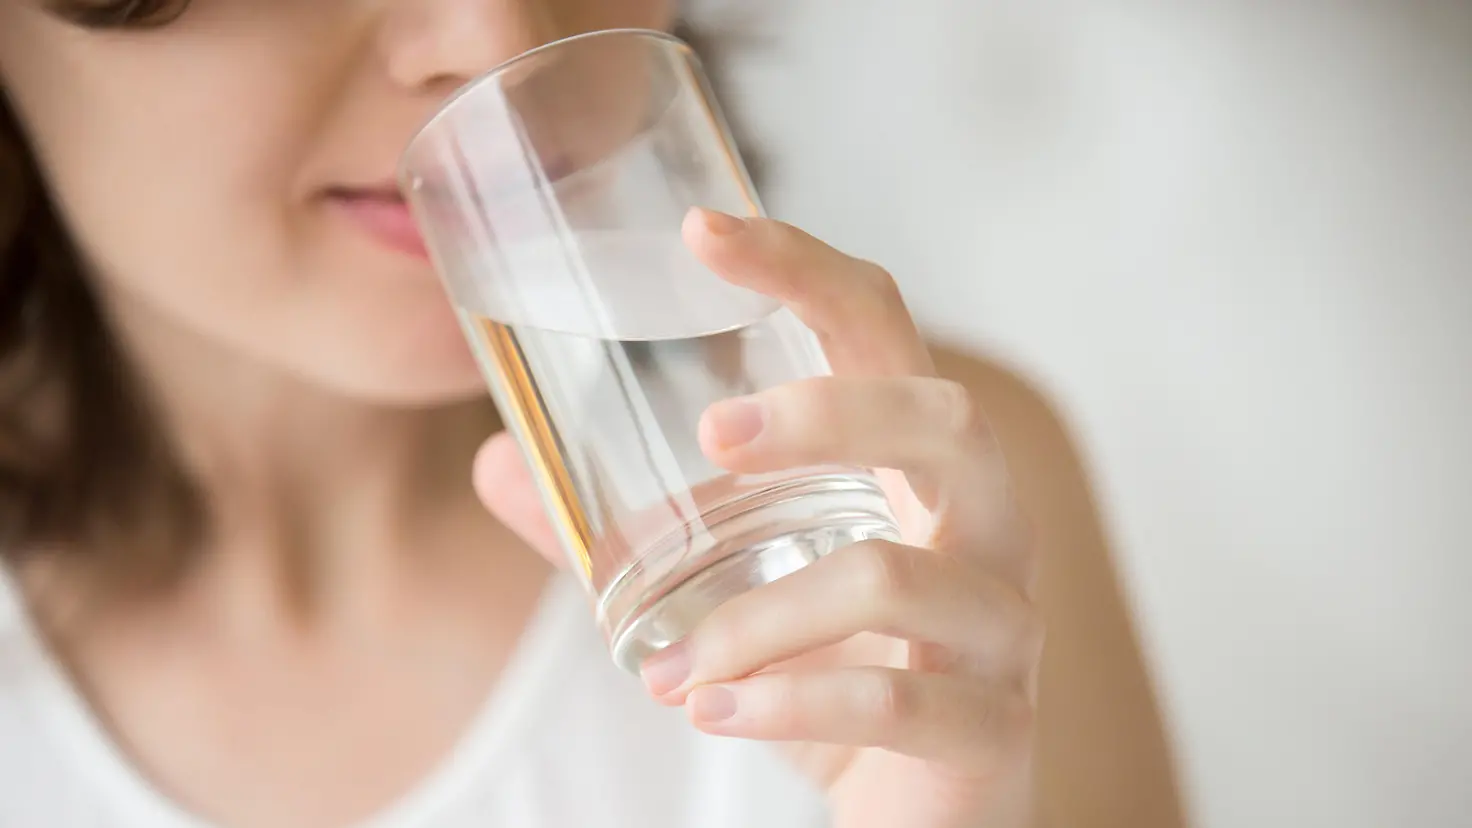 Das Bild zeigt eine Frau, die Wasser aus einem Glas trinkt.